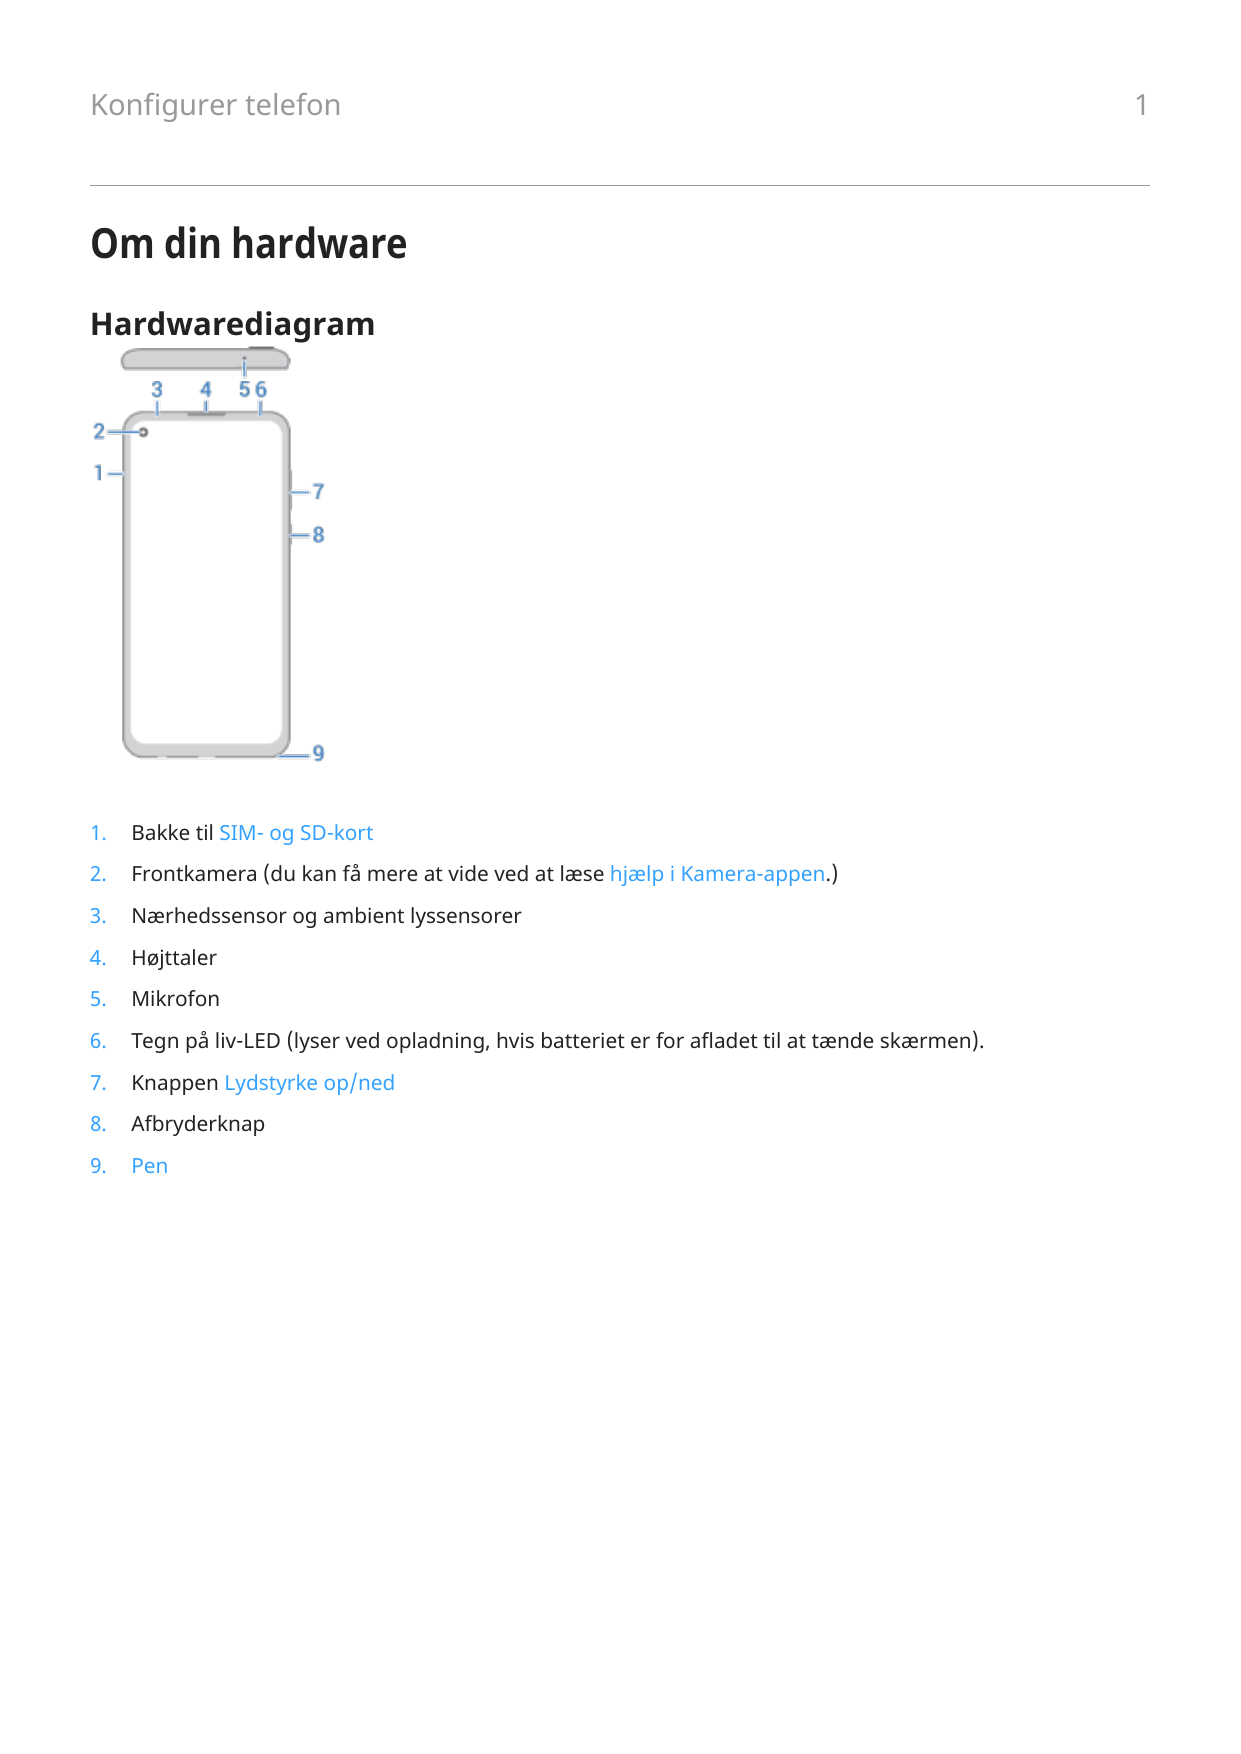 Konfigurer telefonOm din hardwareHardwarediagram1.Bakke til SIM- og SD-kort2.Frontkamera (du kan få mere at vide ved at læse hjæ